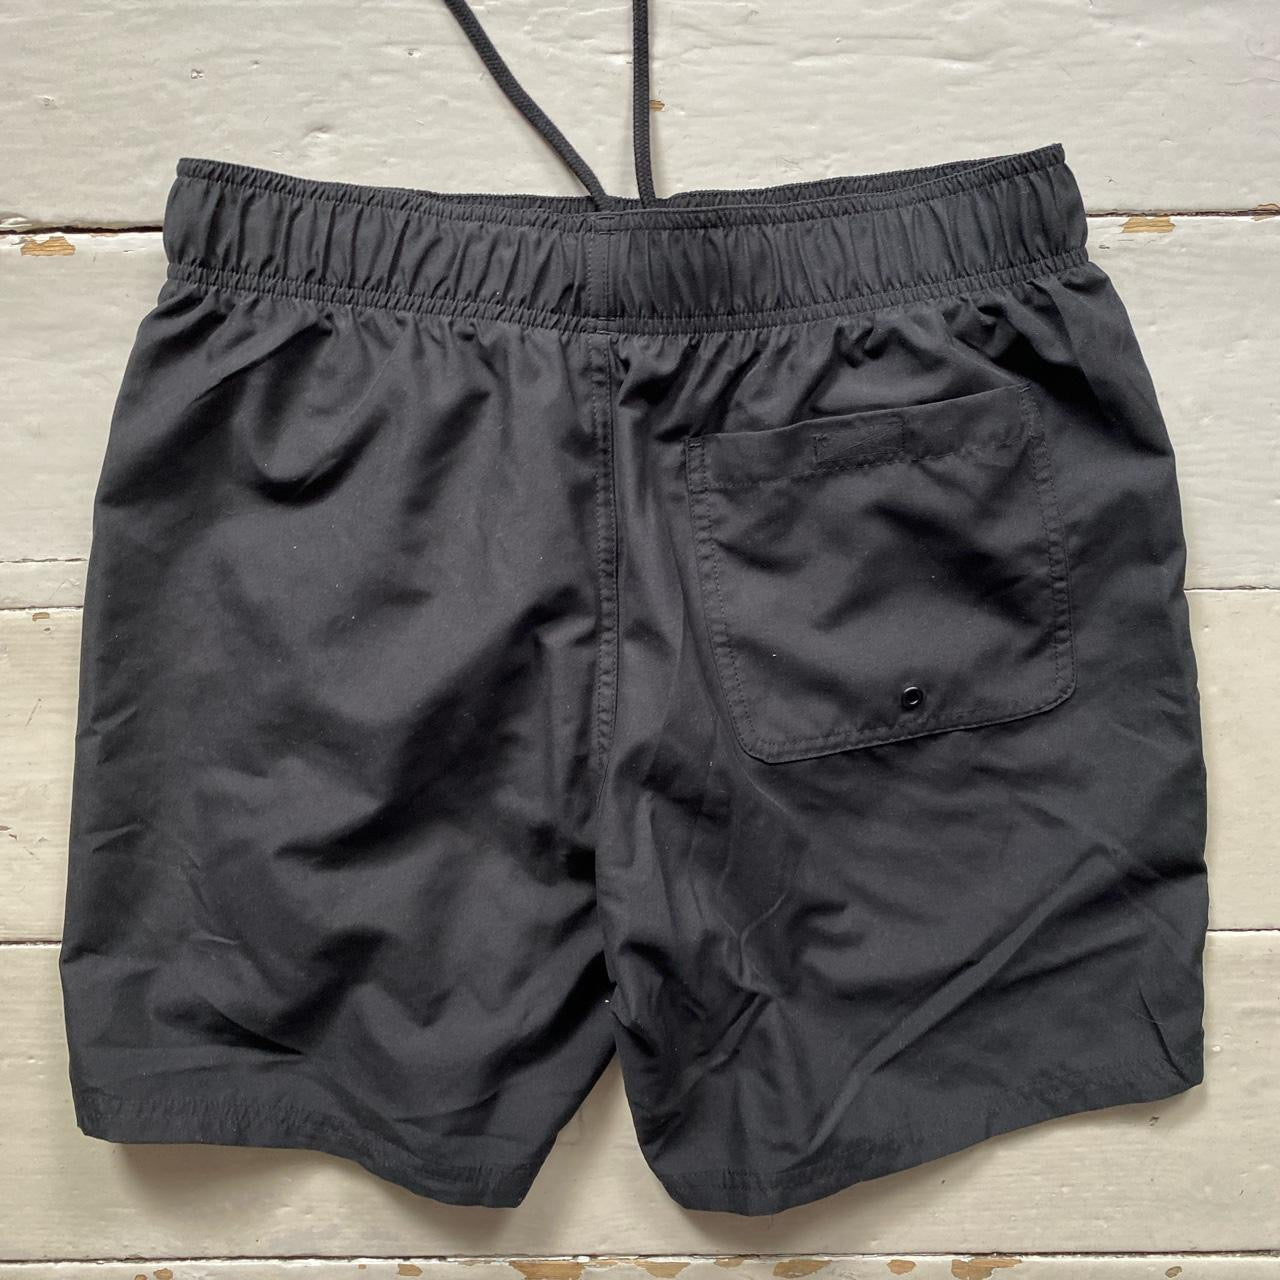 Adidas Shorts Black (Medium)